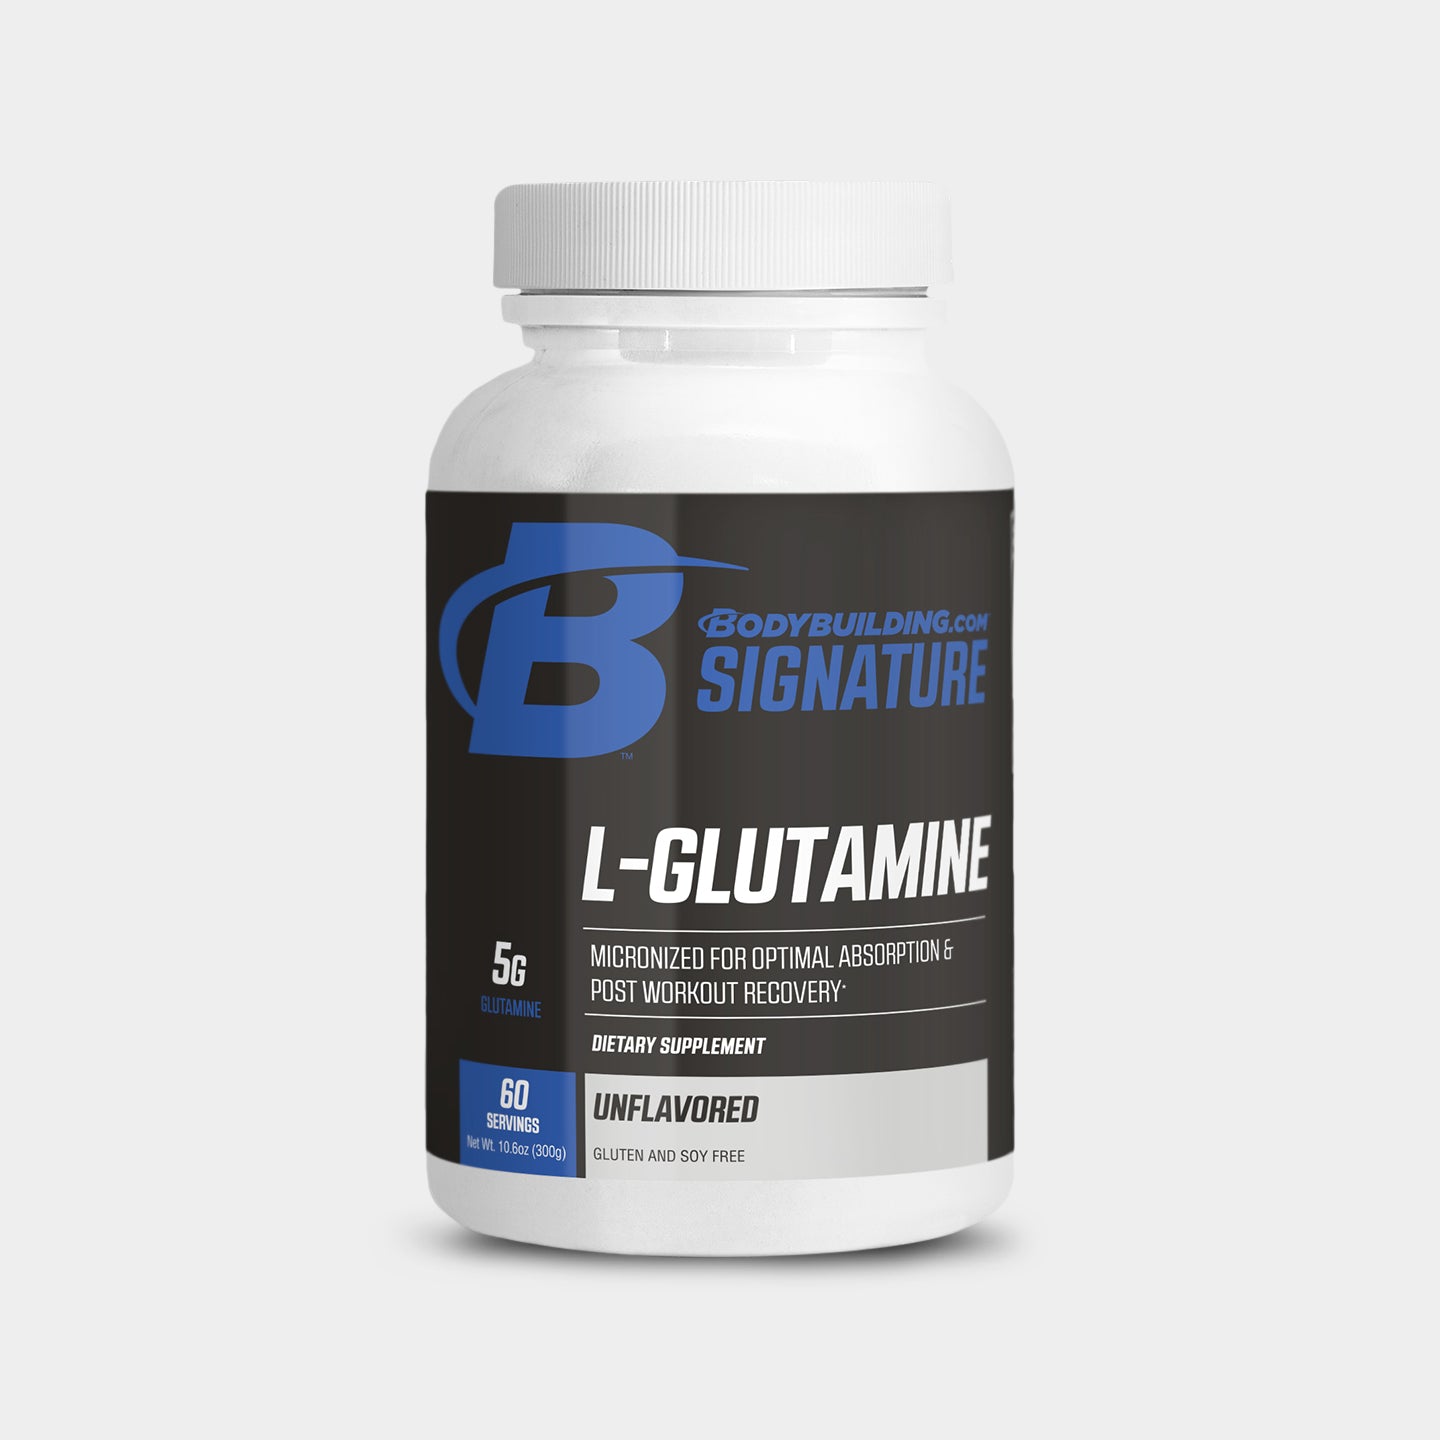 Bodybuilding.com Signature Glutamine A1